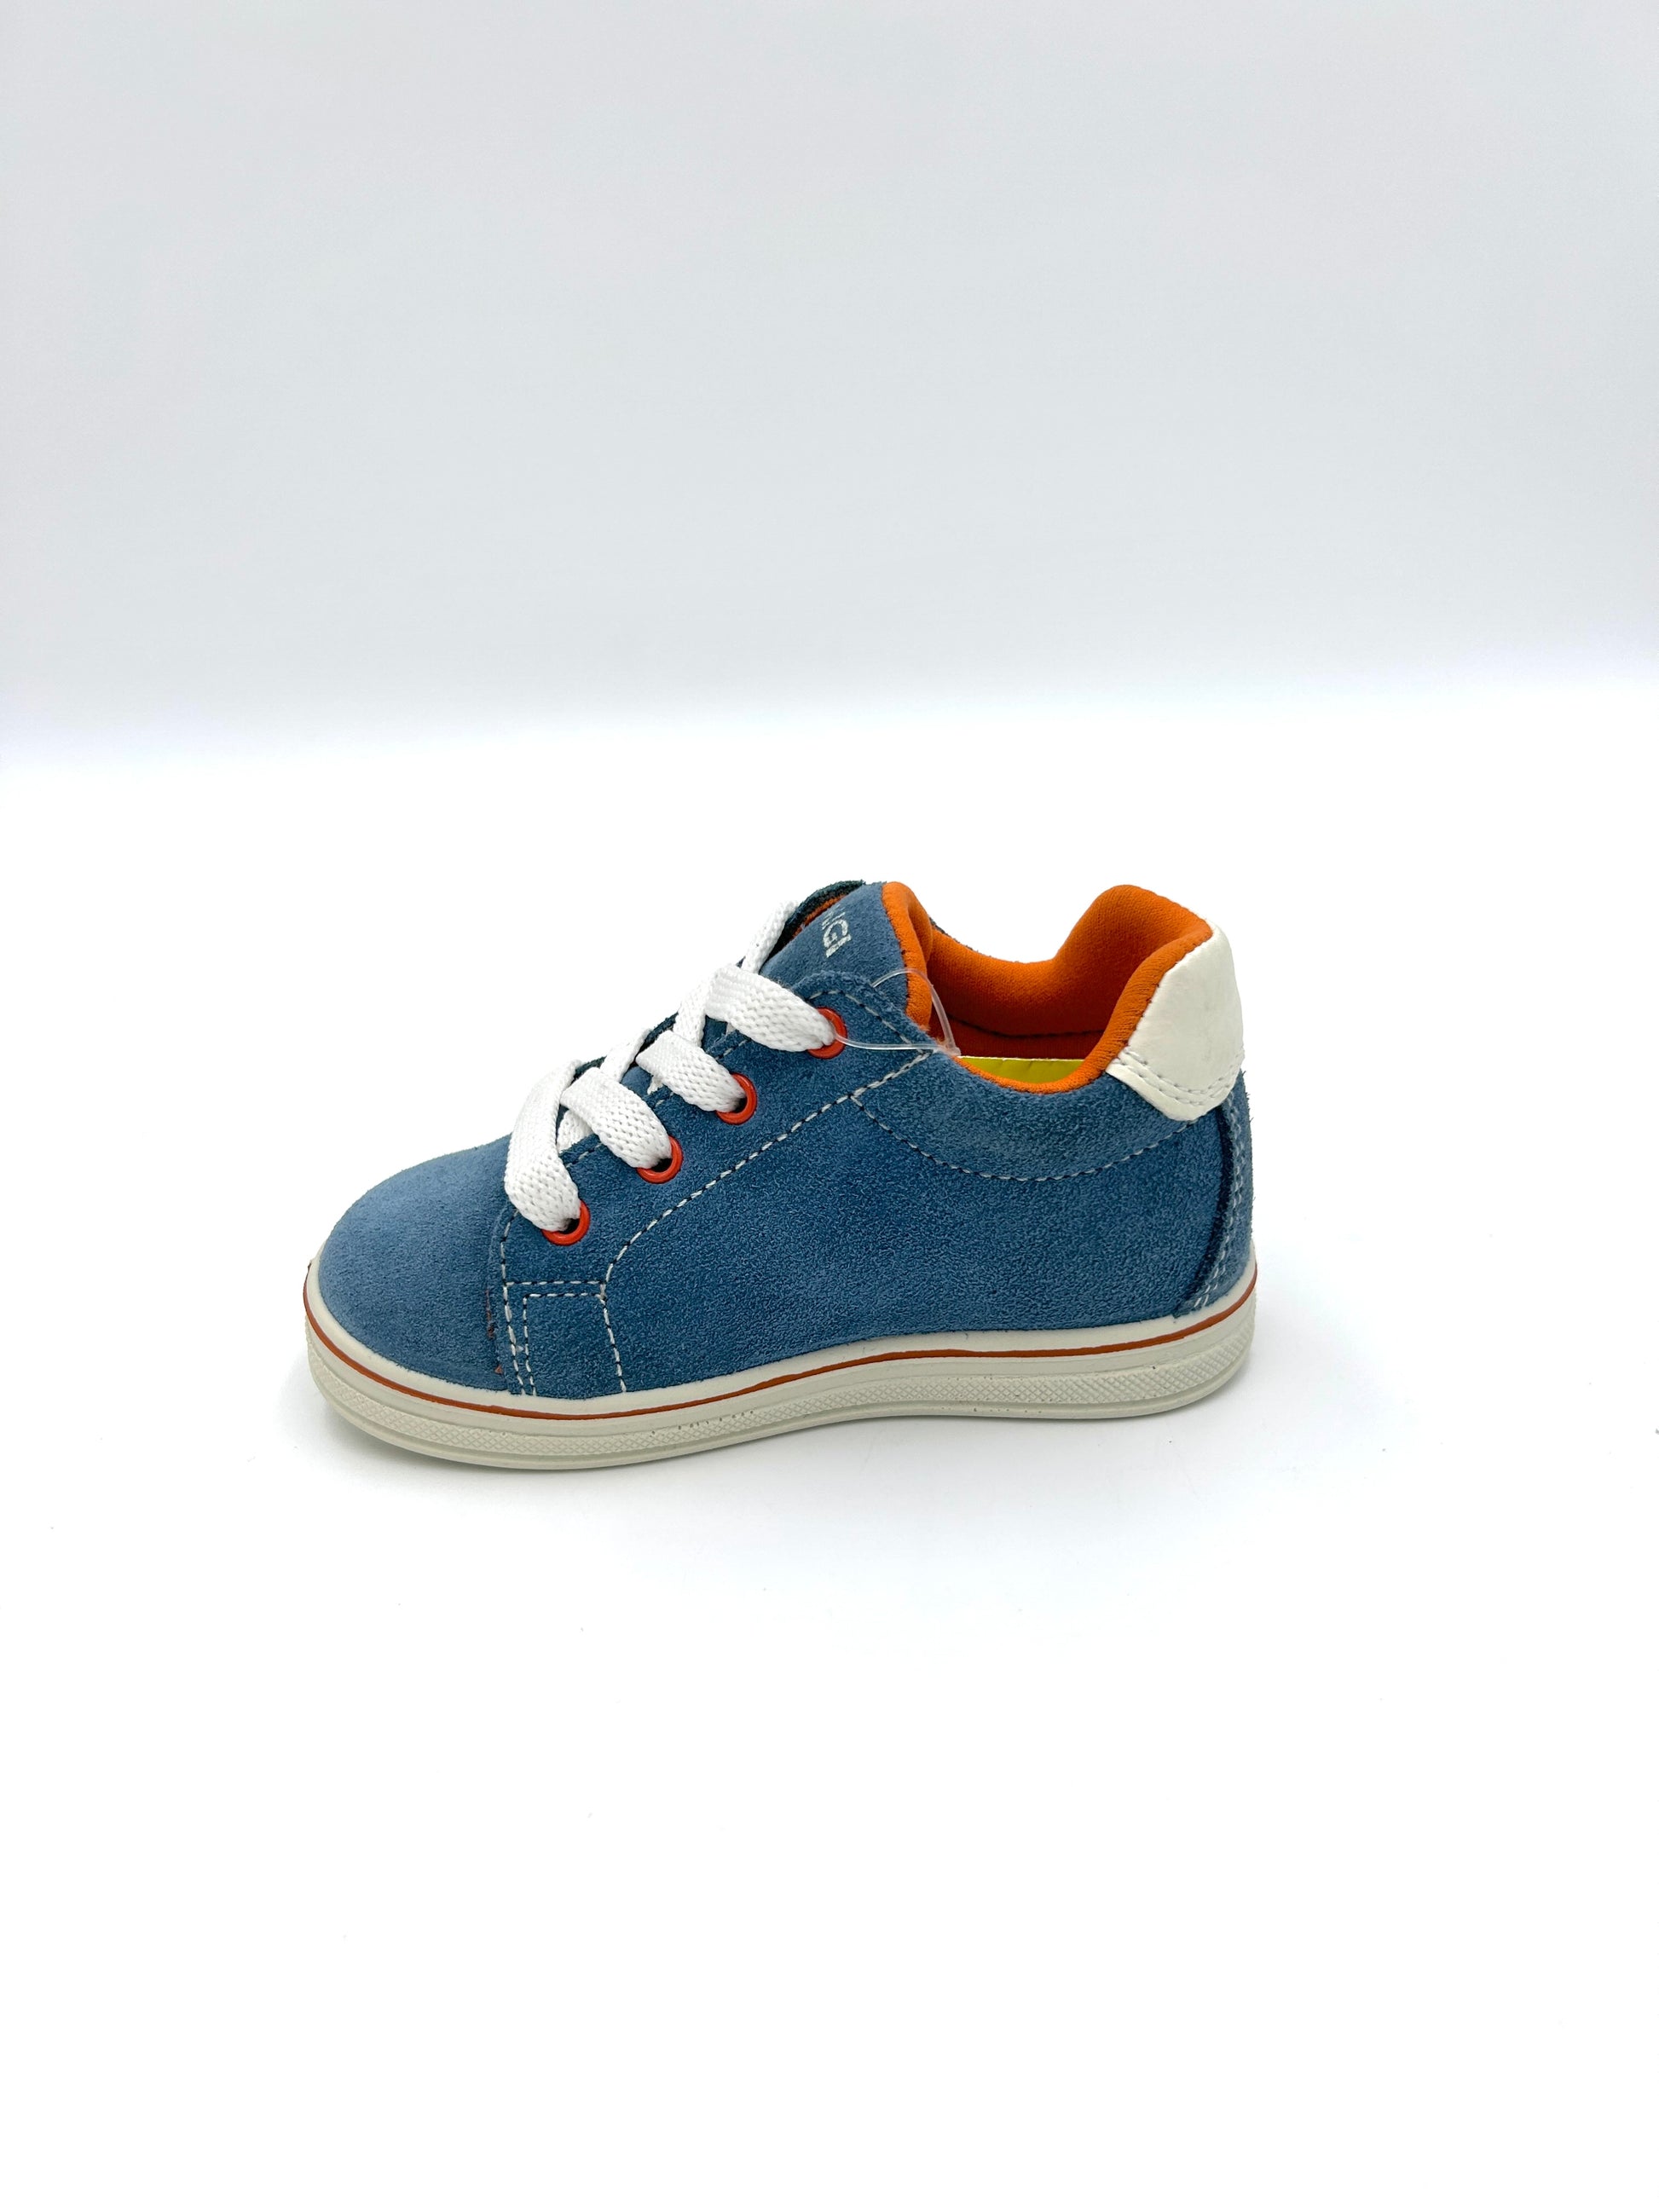 Primigi Sneakers kids lacci - blu e arancione - Primigi